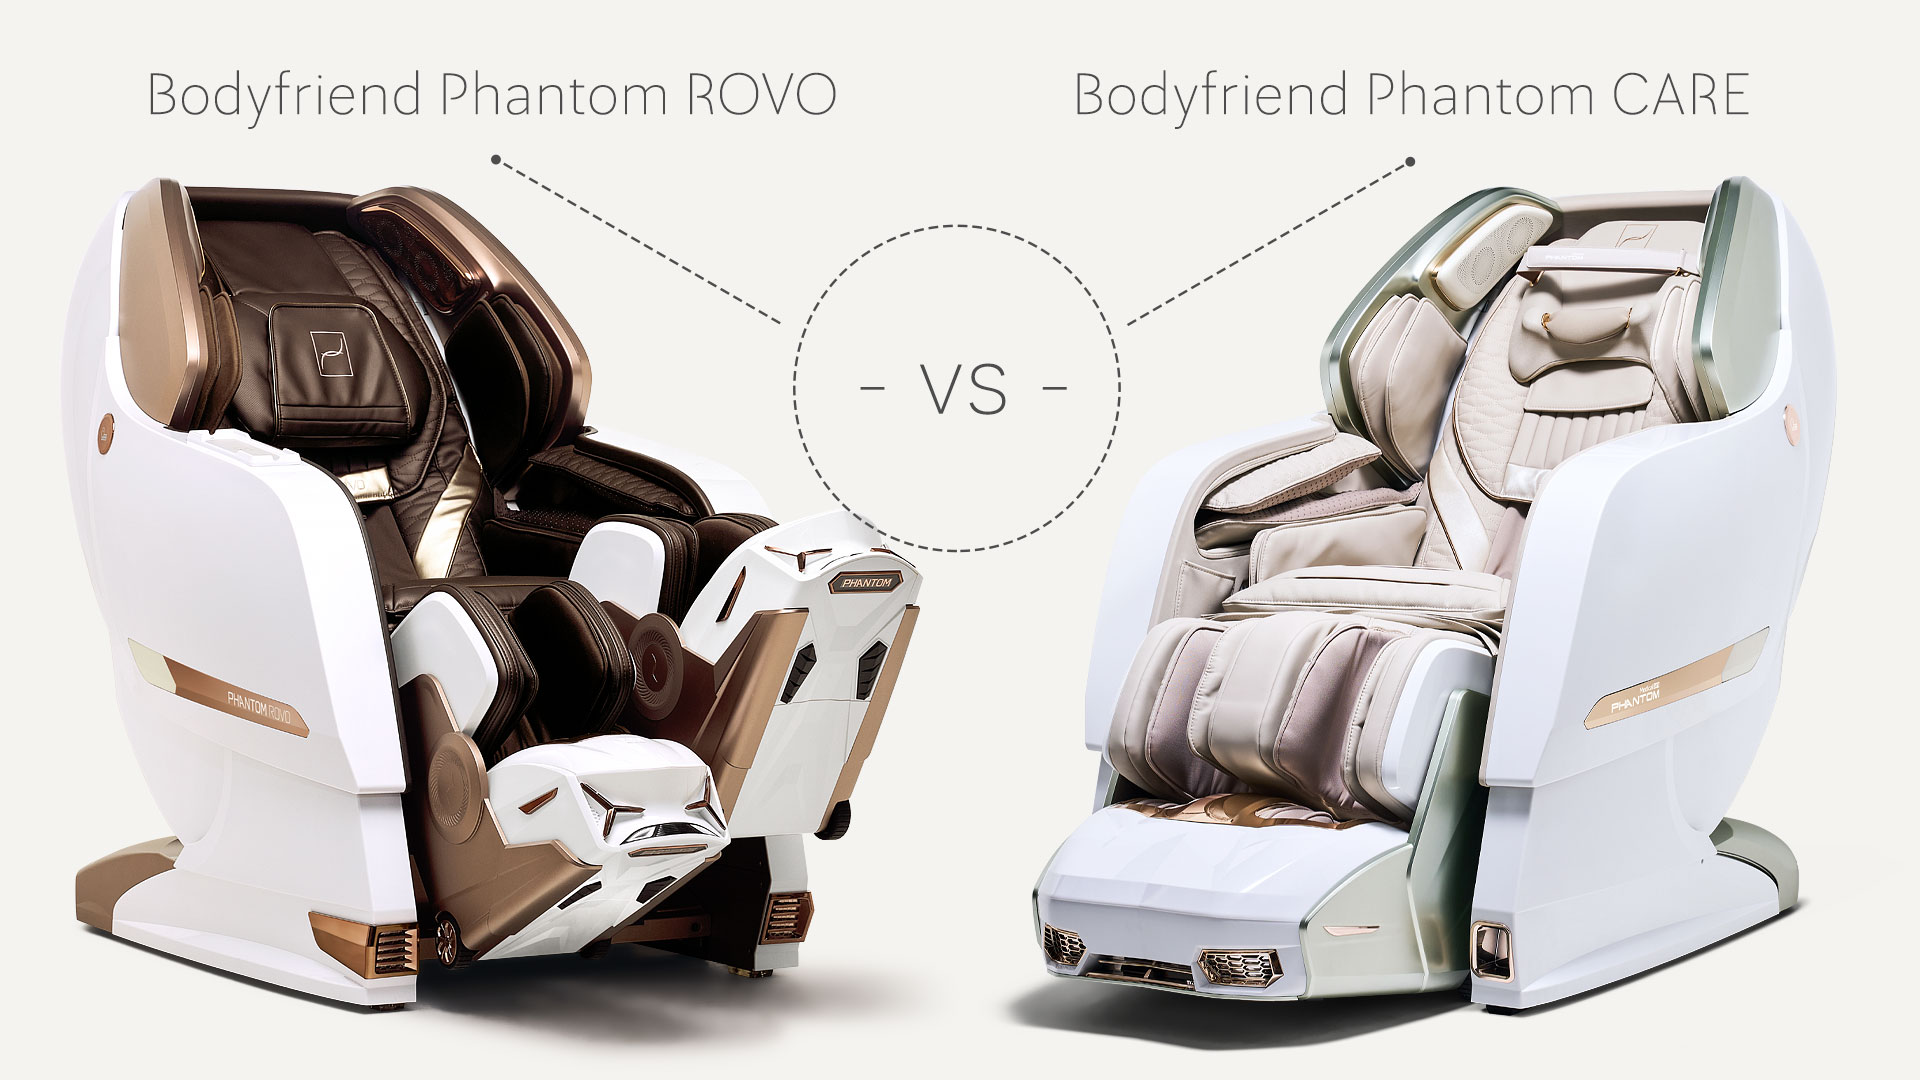 Bodyfriend Phantom Rovo vs Bodyfriend Phantom Care